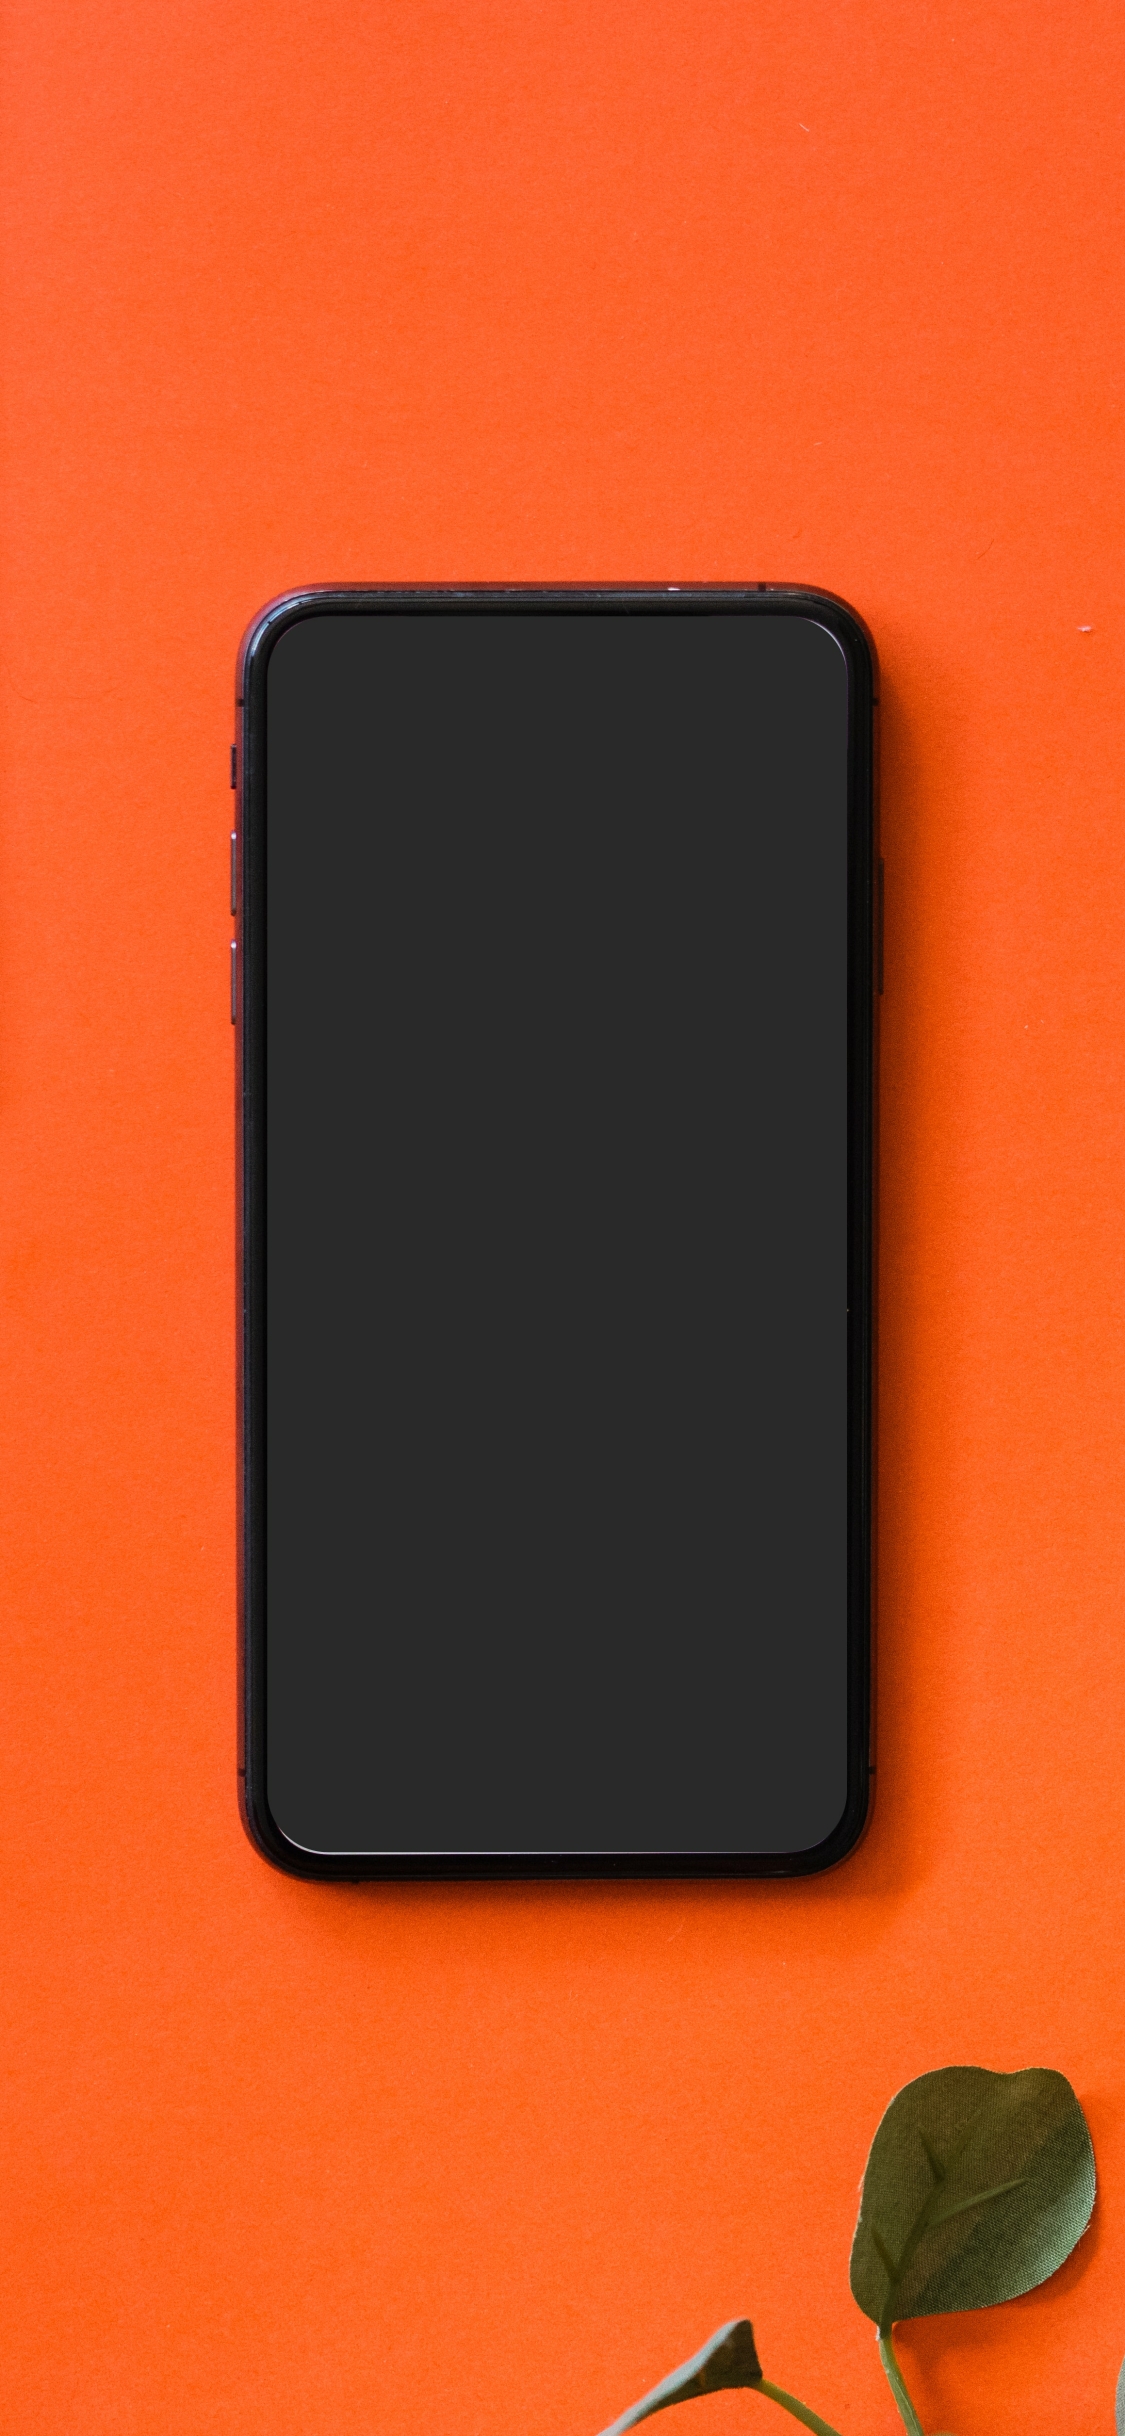 Black iPhone 5 on orange surface